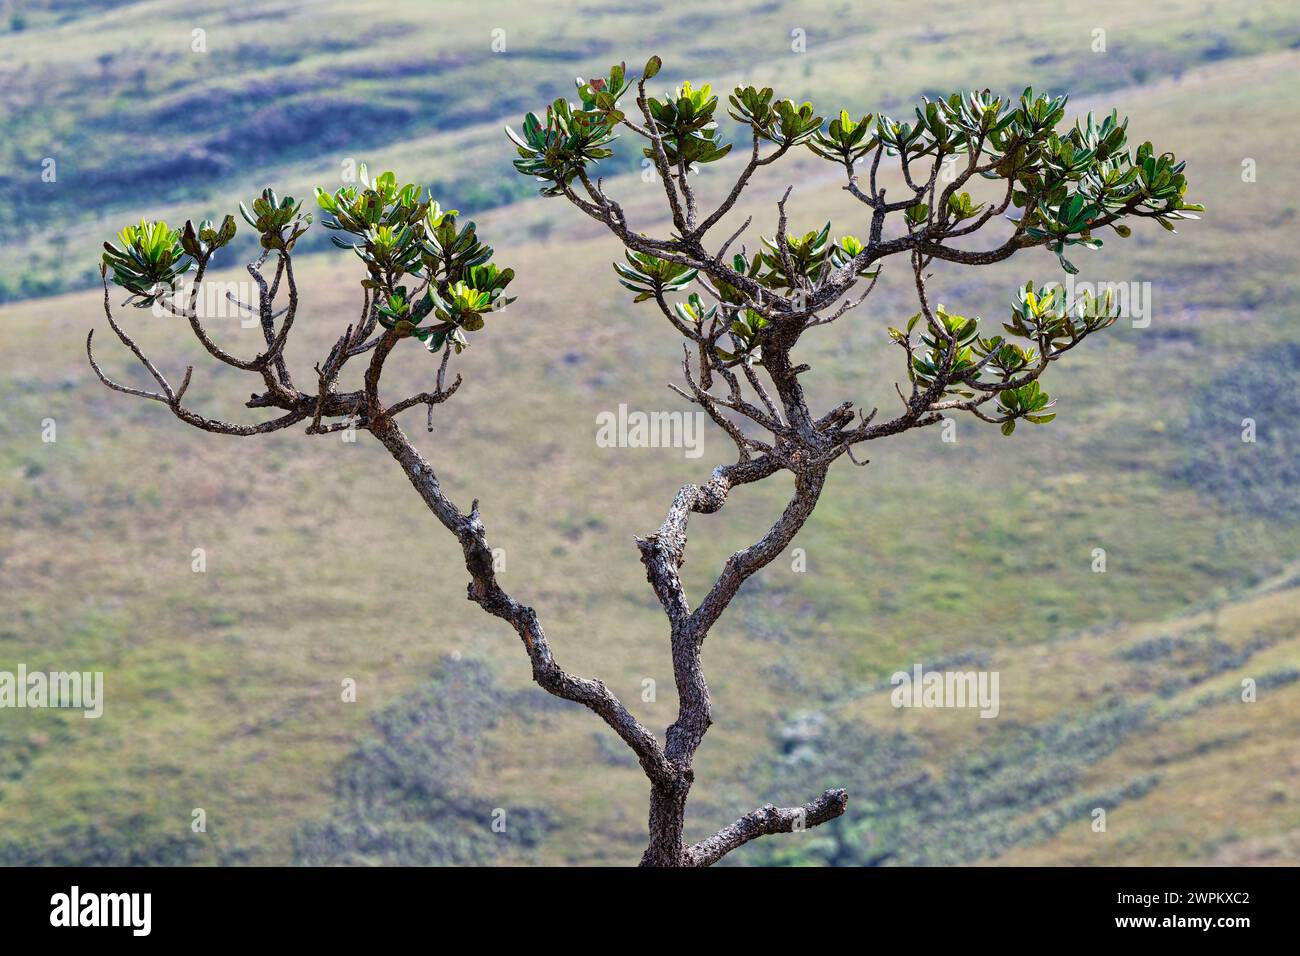 Cerrado-Baum, Serra da Canastra, Minas Gerais, Brasilien, Südamerika Stockfoto